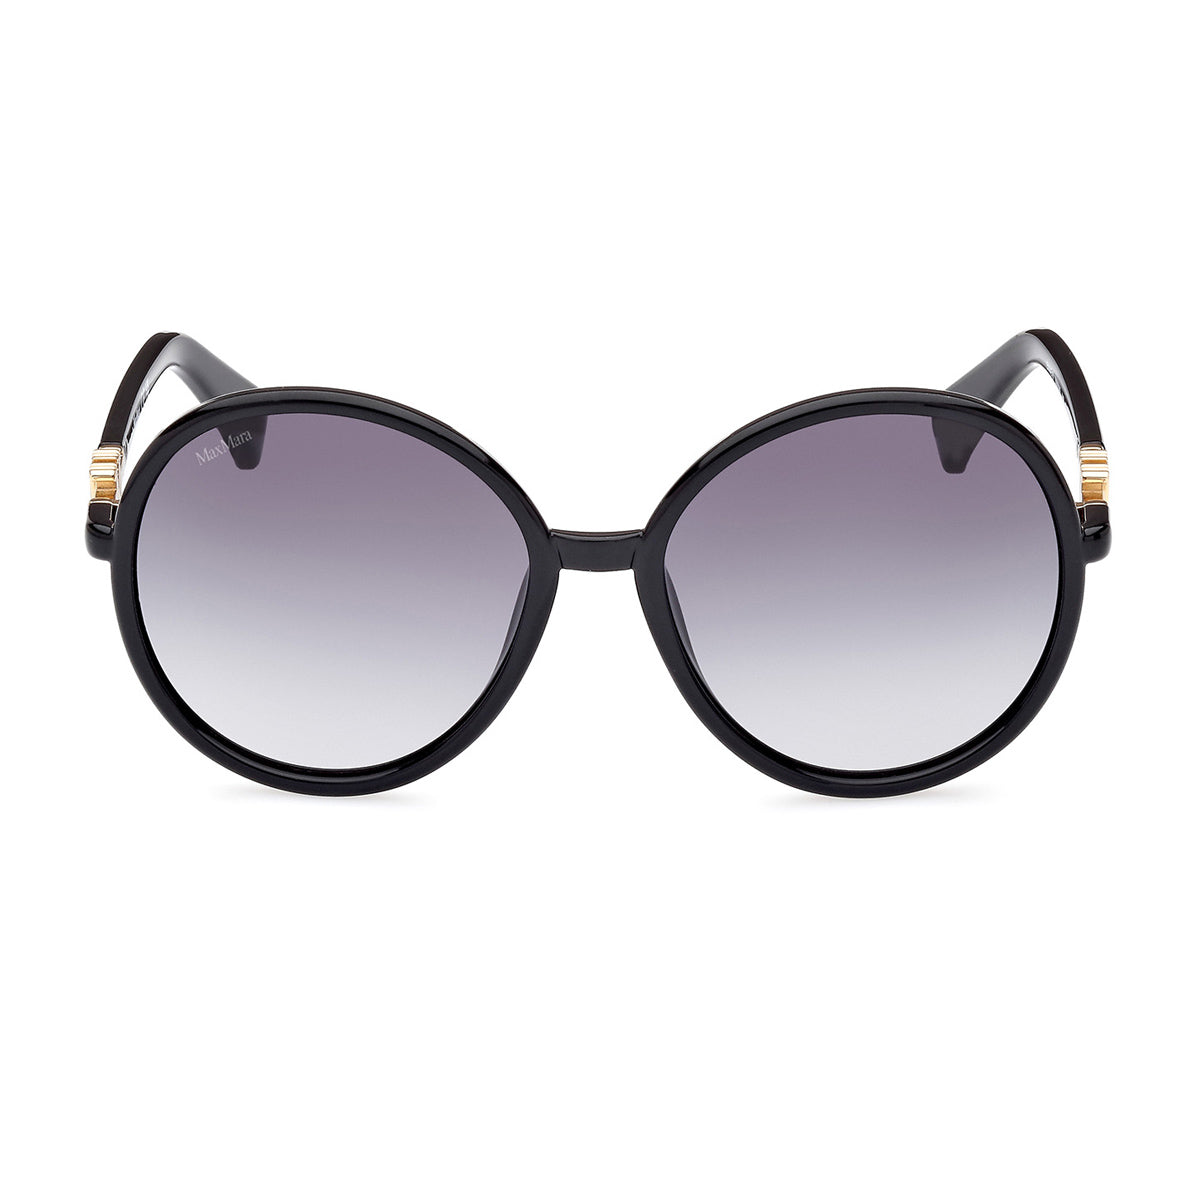 MM0065 01B-Occhiali da sole-Max Mara-La collezione di occhiali da sole Max Mara è una meravigliosa fusione di stile sofisticato, eleganza senza tempo e design di alta qualità. Conosciuta per il suo approccio alla moda che abbraccia l'eleganza italiana, Max Mara offre una vasta gamma di occhiali da sole che soddisfano i gusti e le preferenze di molte persone. Questo modello è caratterizzato da una montatura oversize tonda realizzata in acetato ma la novità è il nuovo logo Monogram 3D barocco MaxMaragram inte